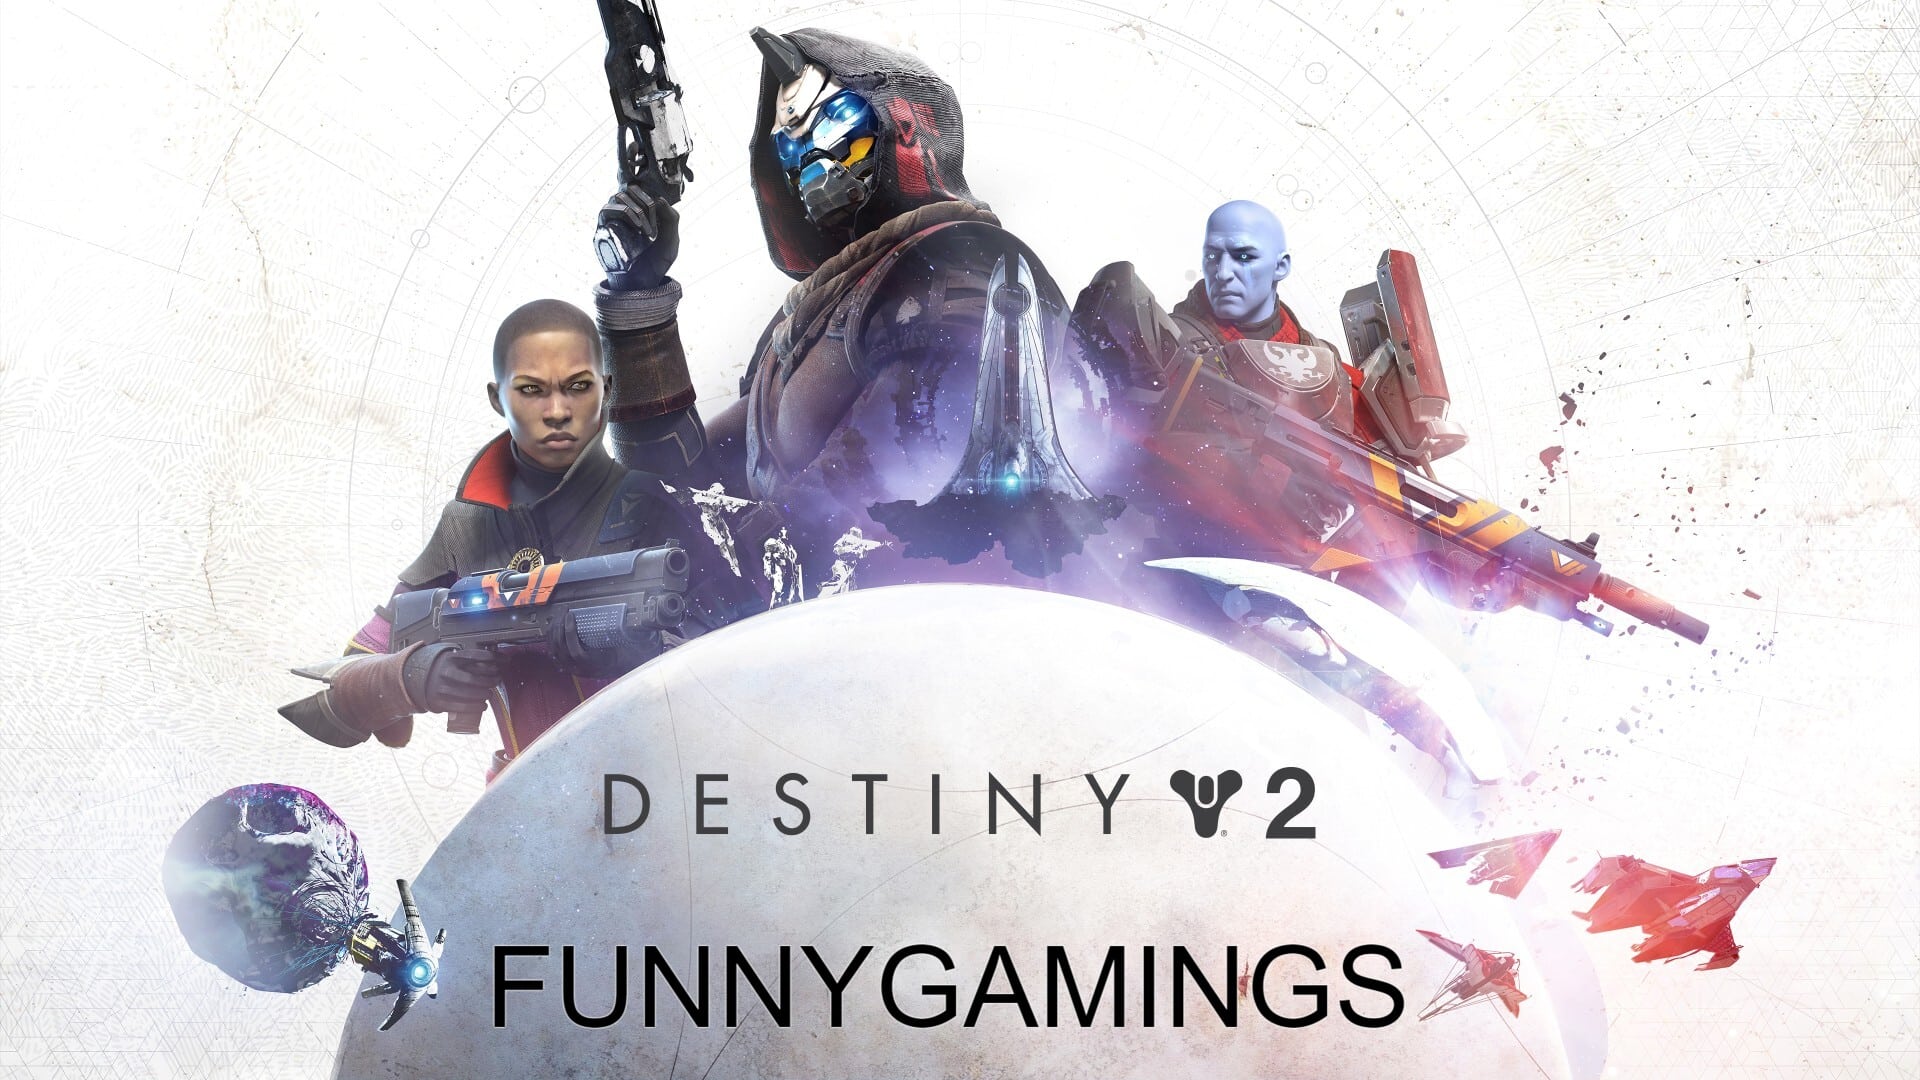 Review Game Destiny 2